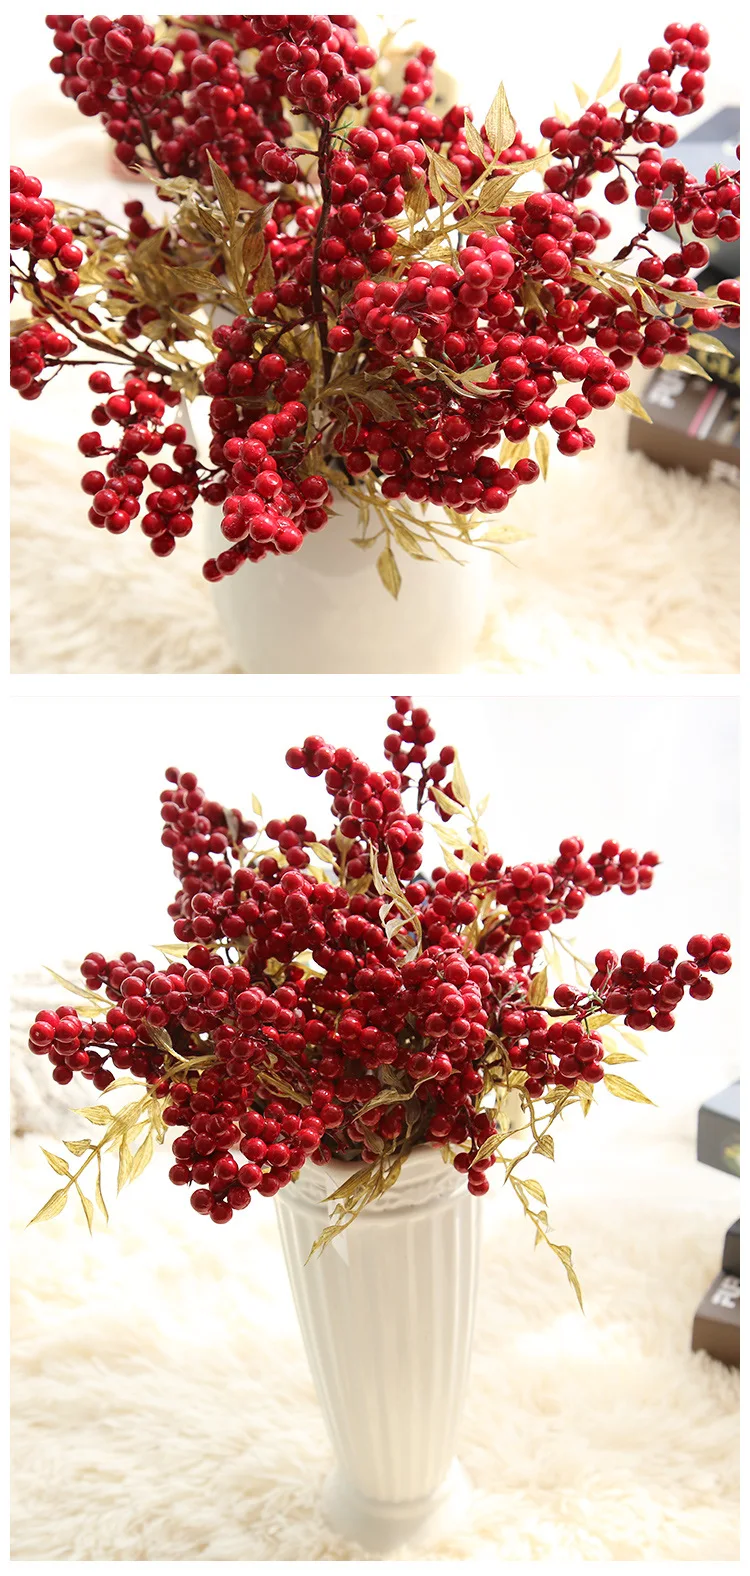 Zonaflor красный ягодный искусственный фрукт 1 шт. пенопластовый букет Свадебный домашний декор вечерние декоративный искусственный цветок для свадебного украшения